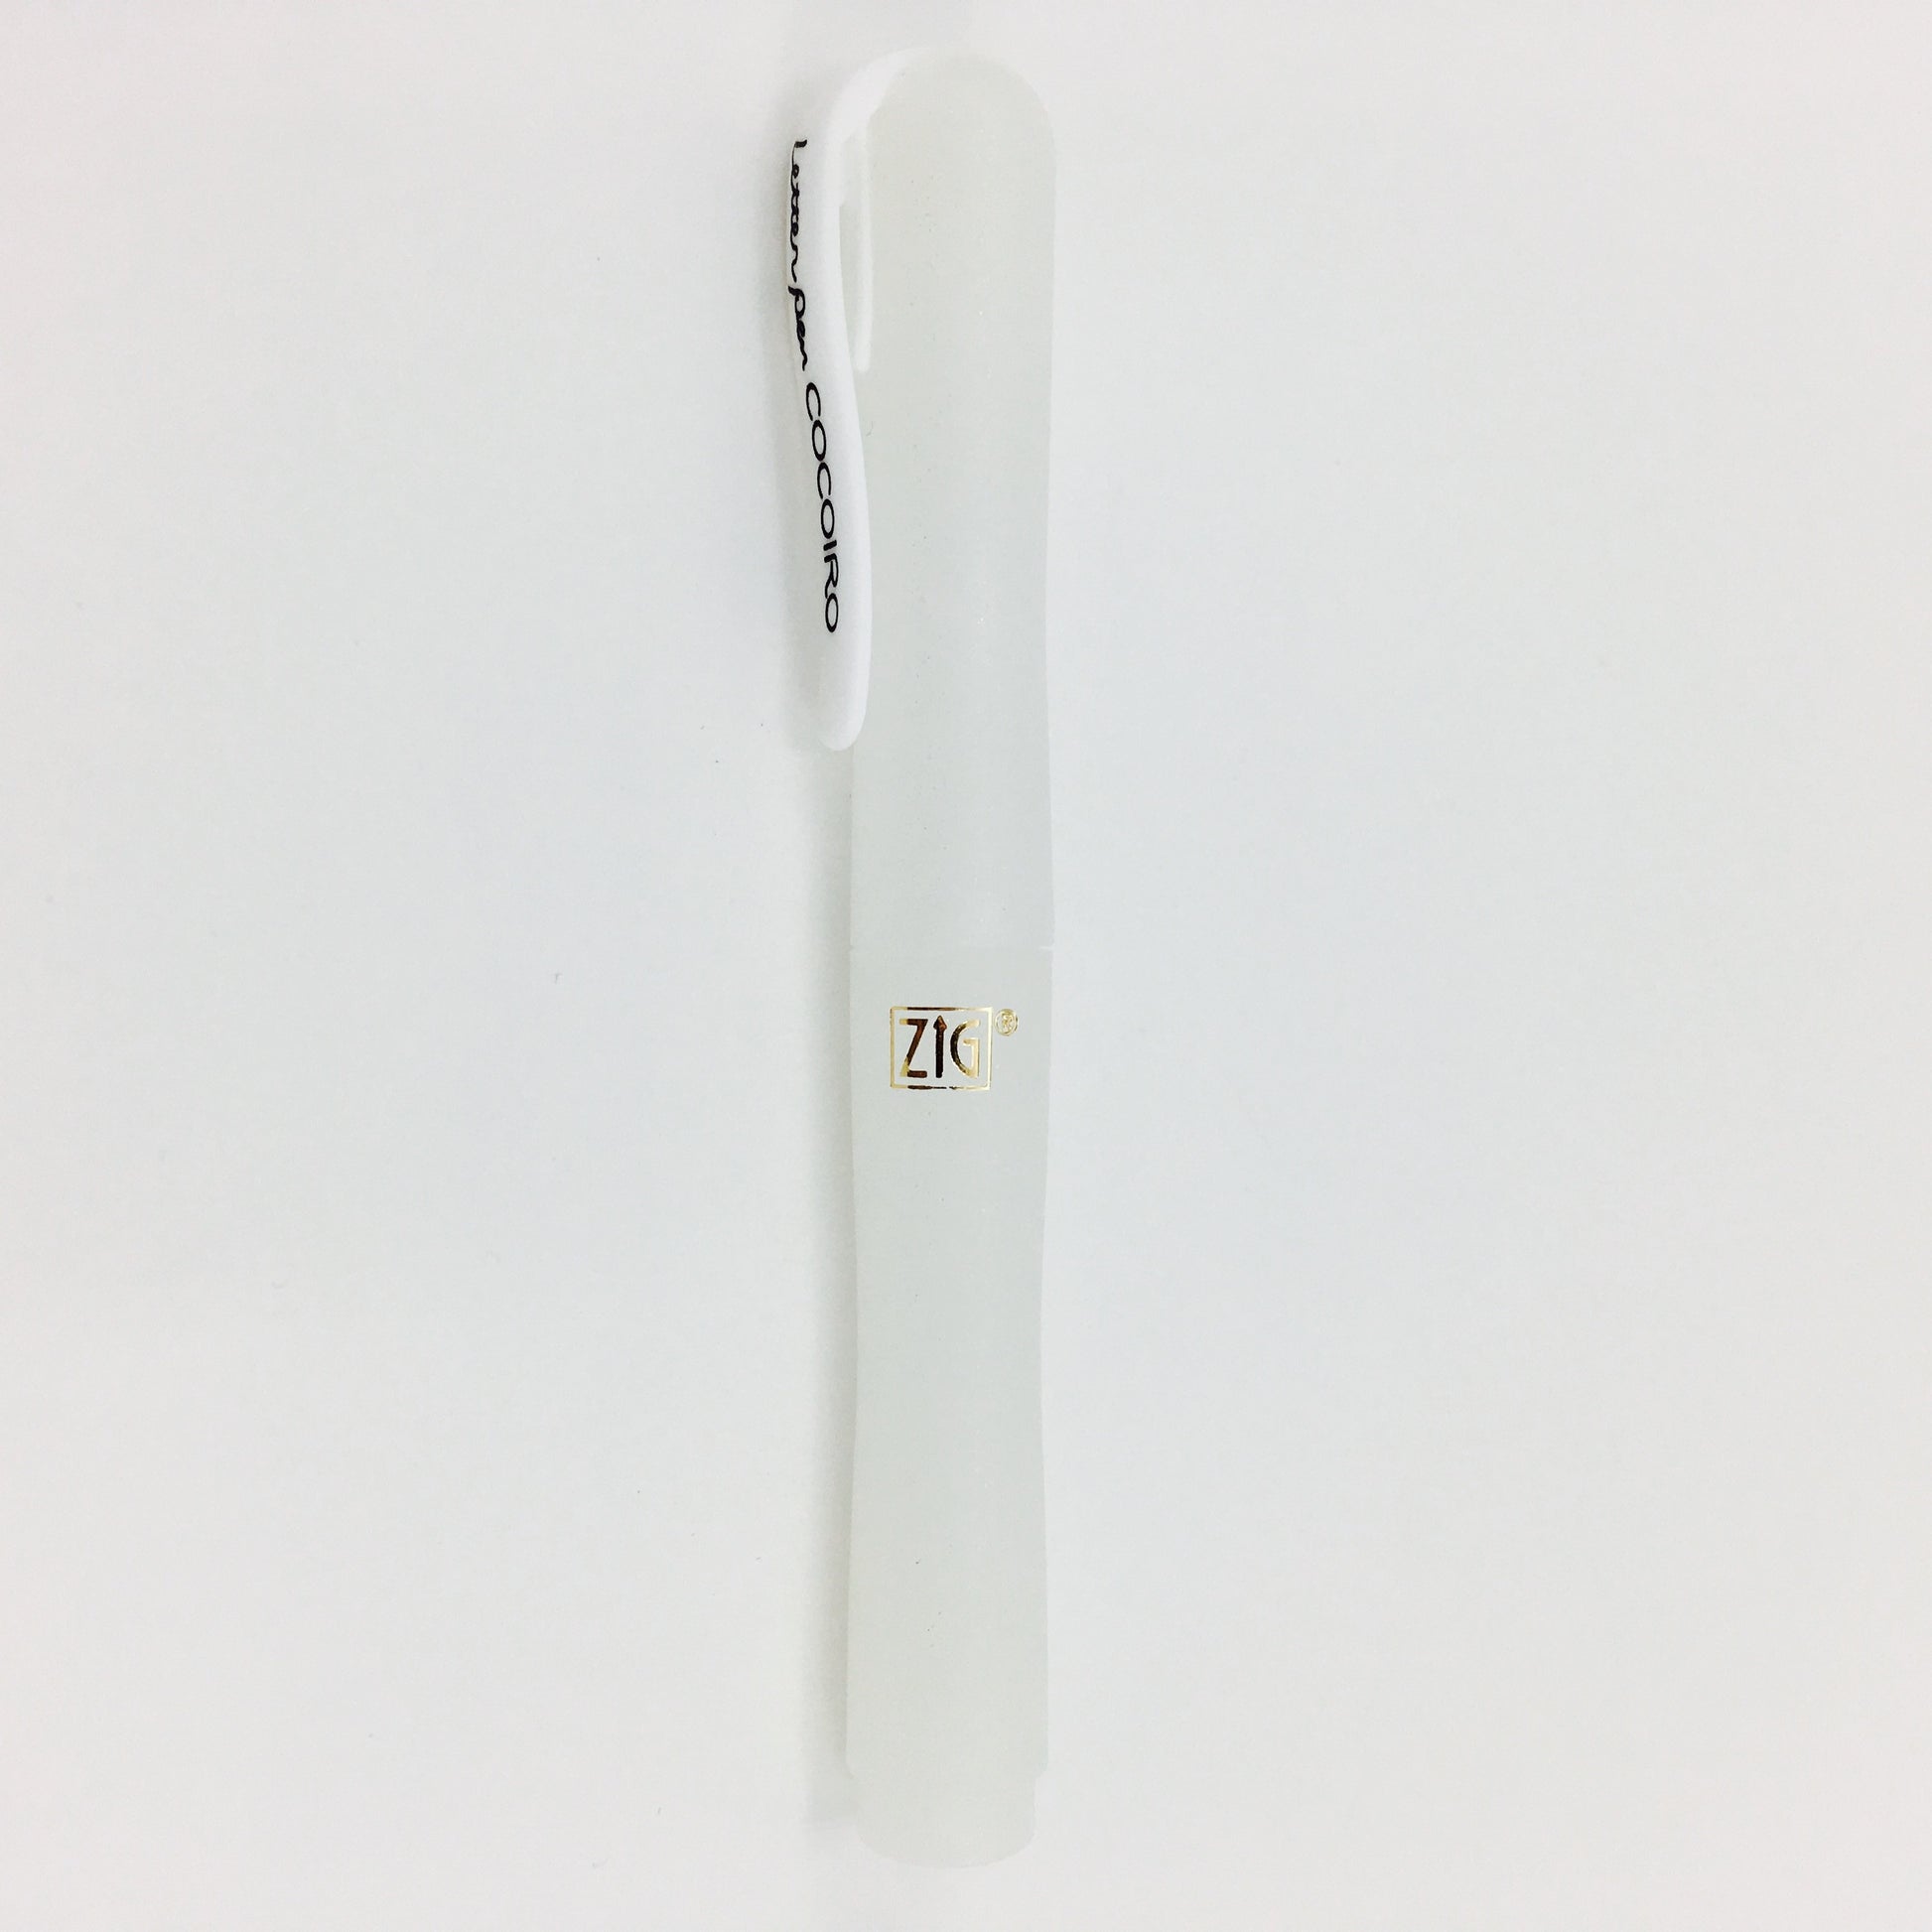 Zig by Kuretake "Cocoiro" Pen Body - Hoarfrost White by Kuretake - K. A. Artist Shop